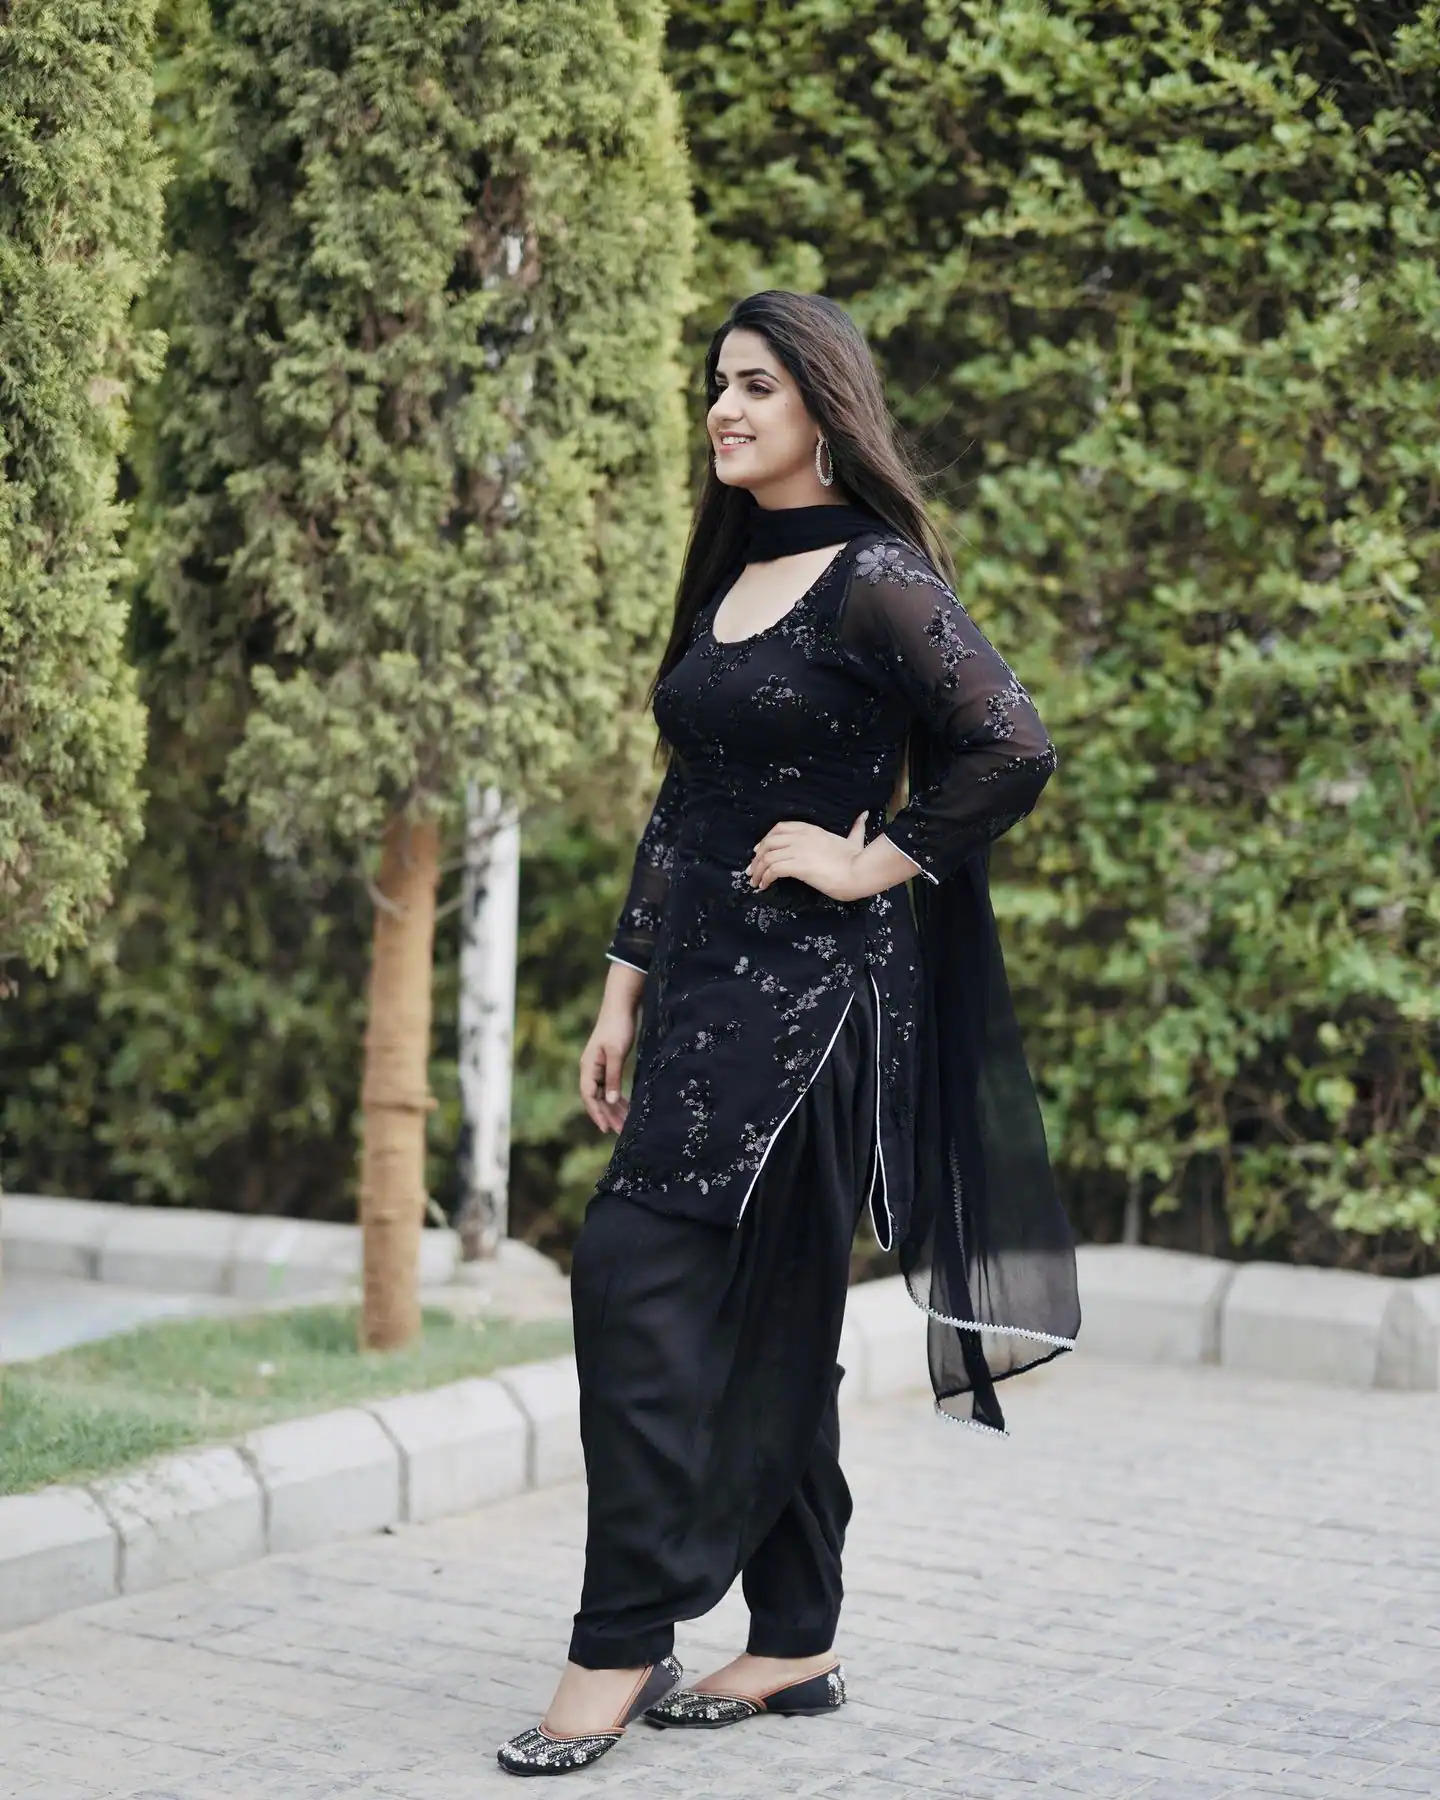 Haryanvi Singer : प्रांजल दहिया ने ब्लैक सूट में दी ऐसी पोज, फैंस हुए दीवाने